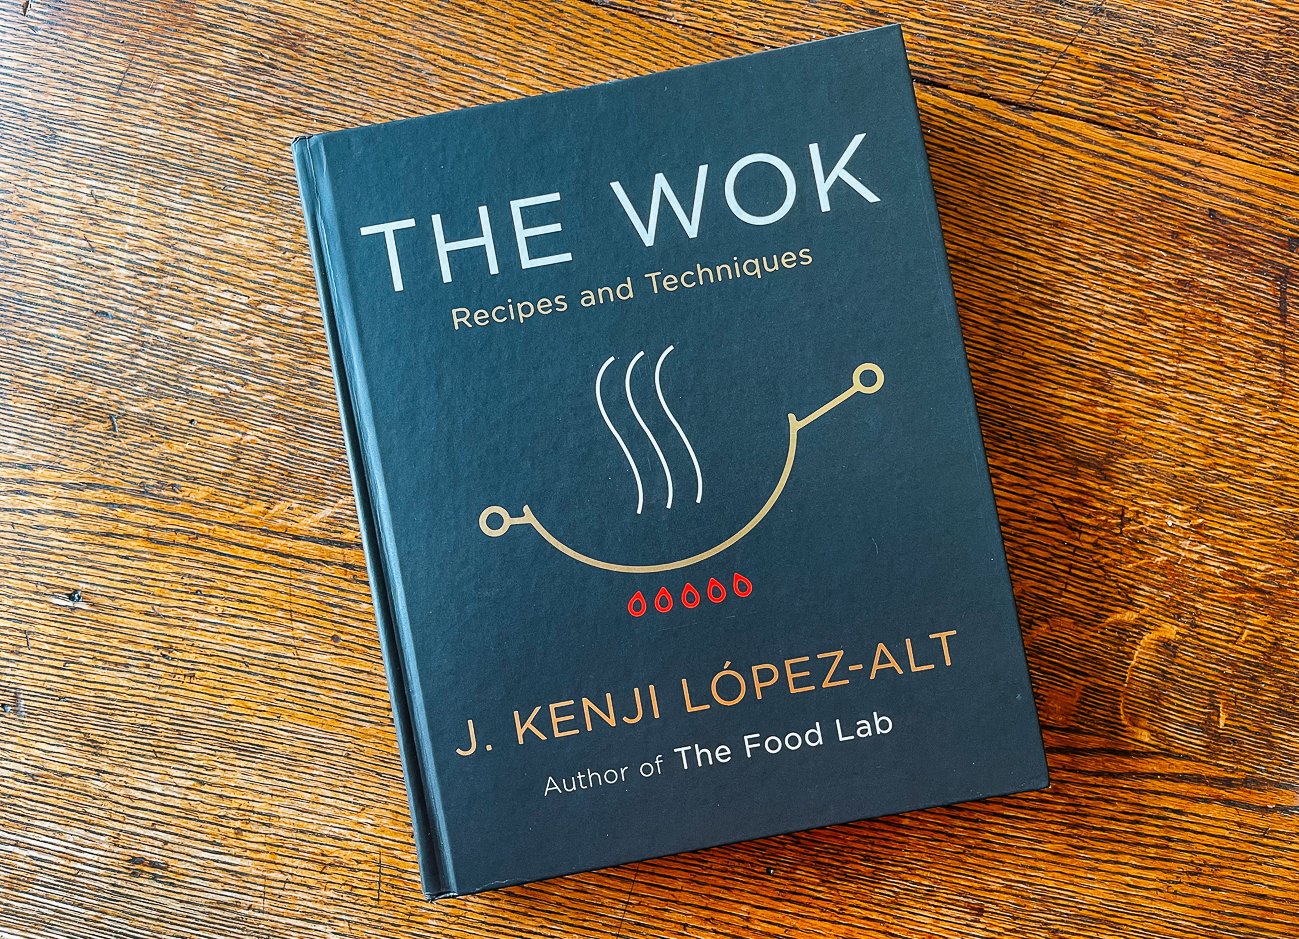 The Wok by J. Kenji López-Alt